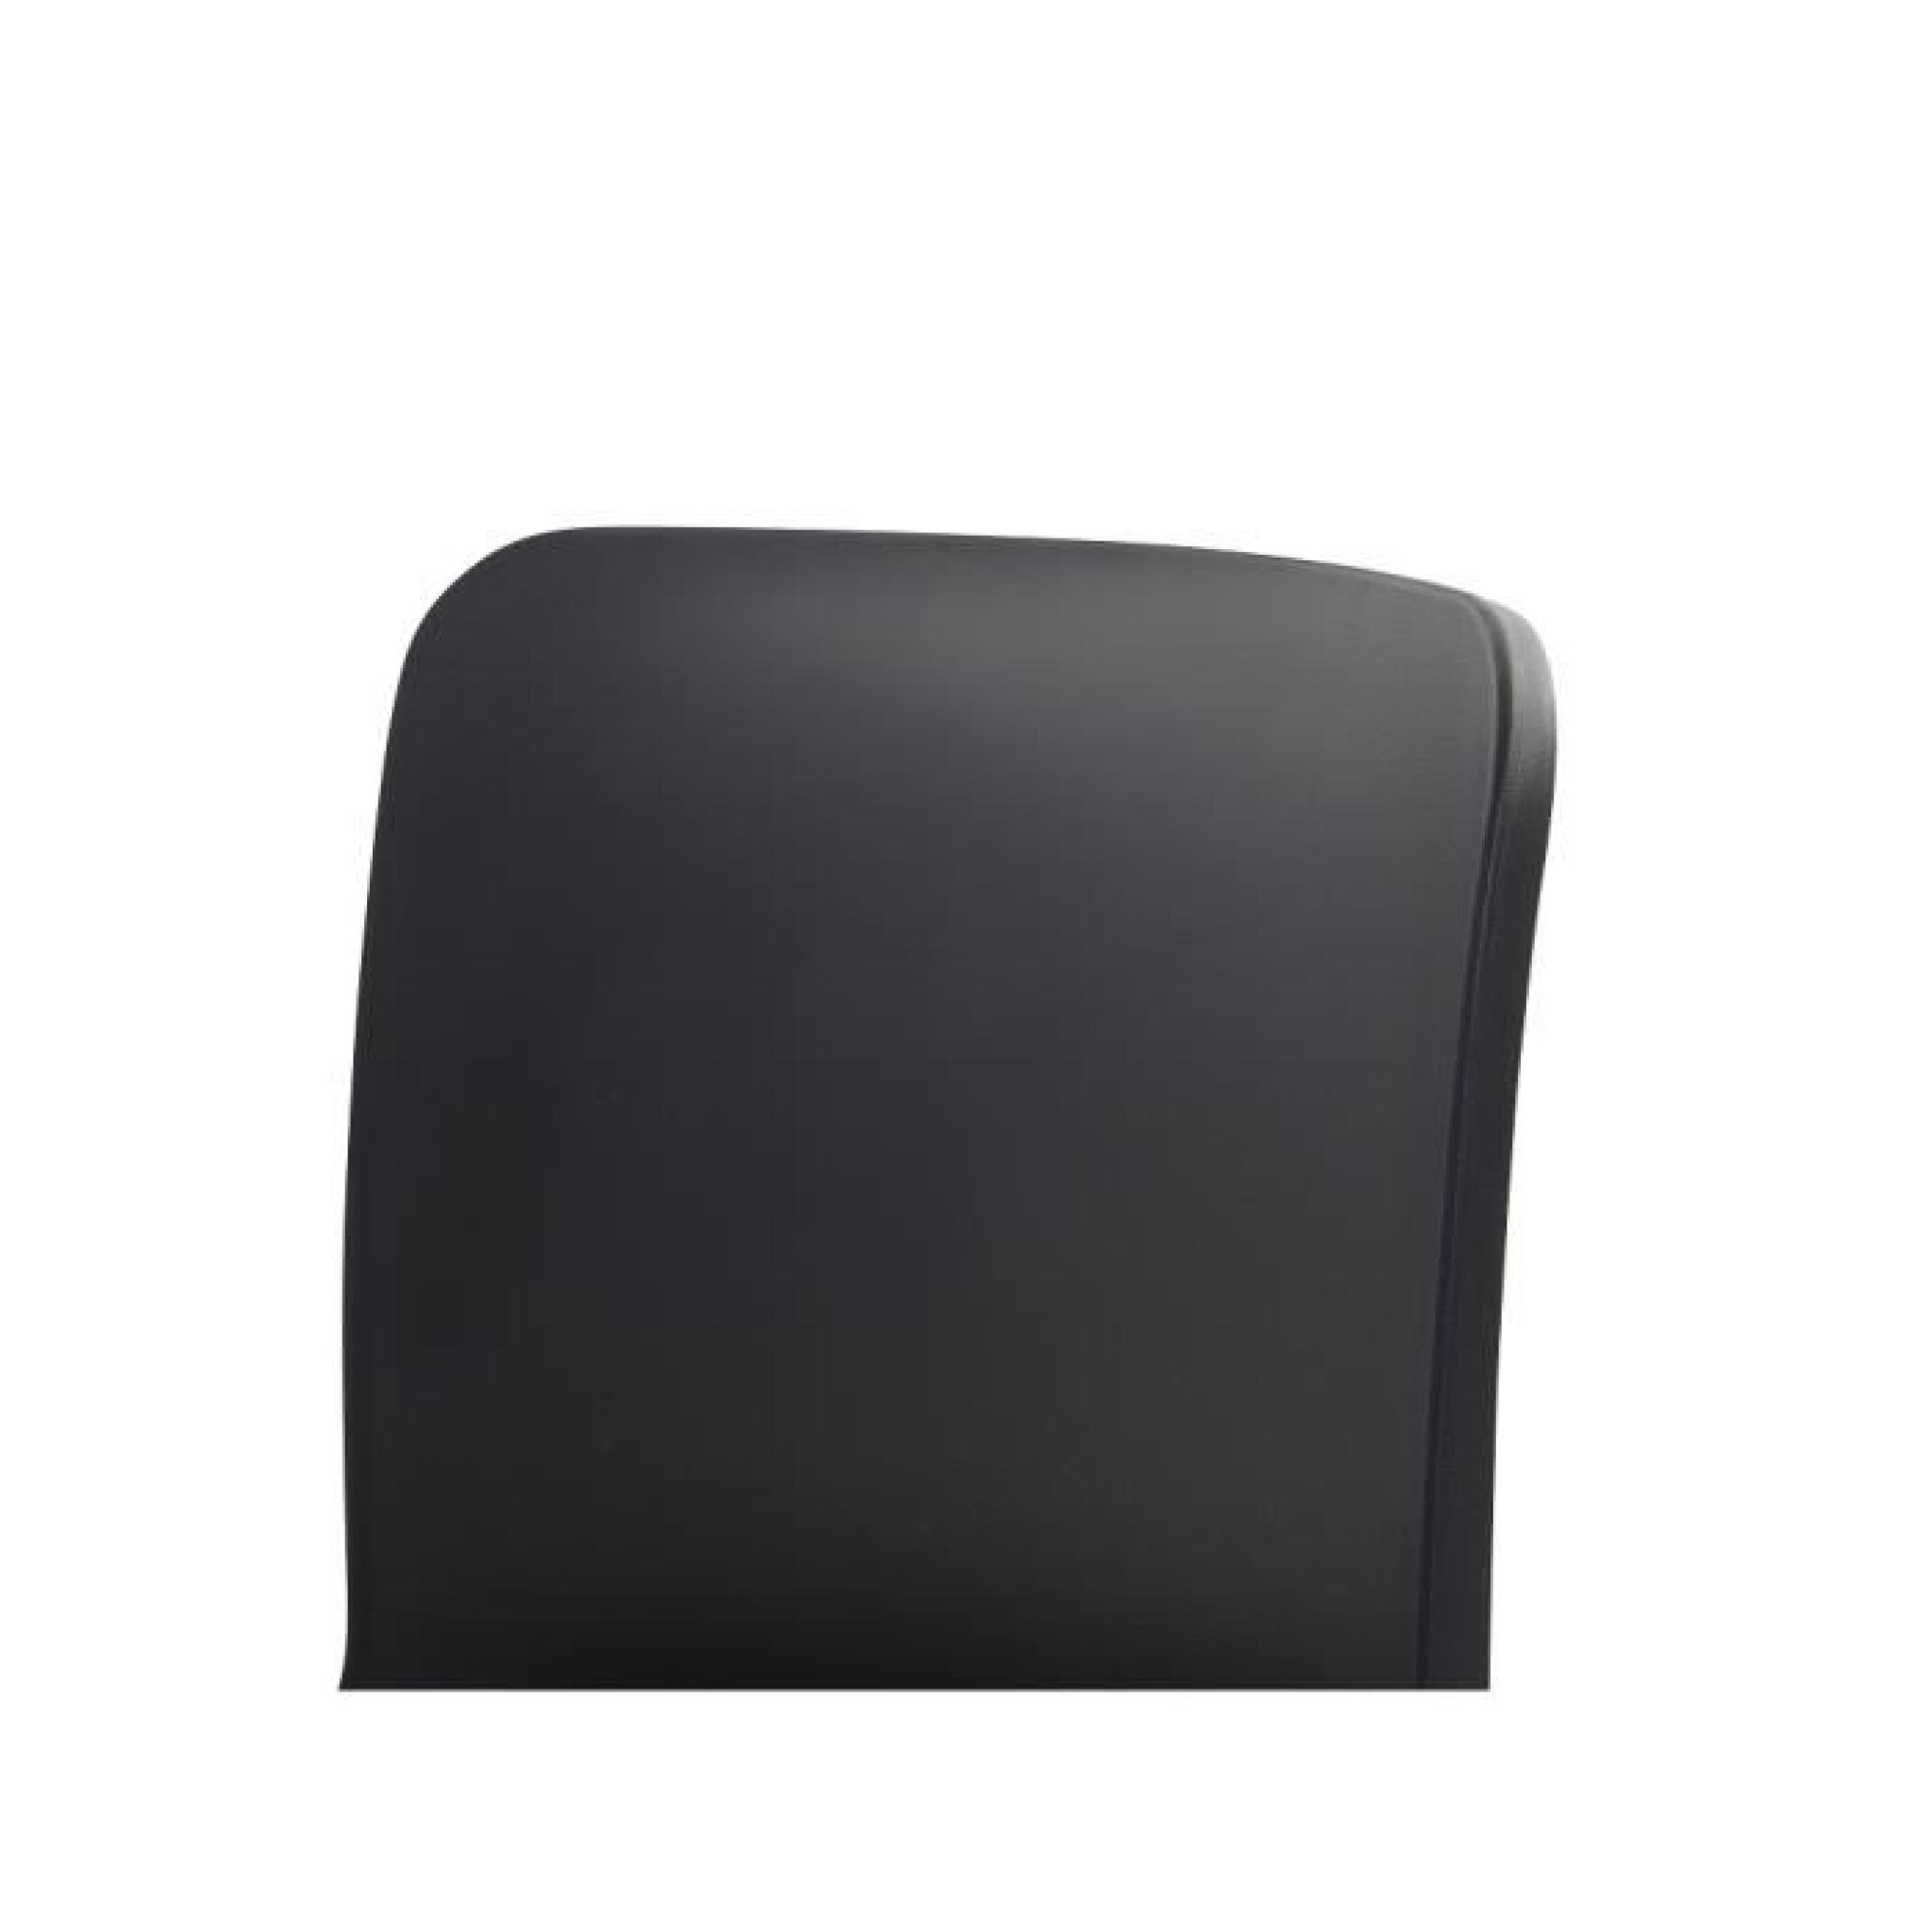 Chaise design - siège en plastique noir - Soho pas cher